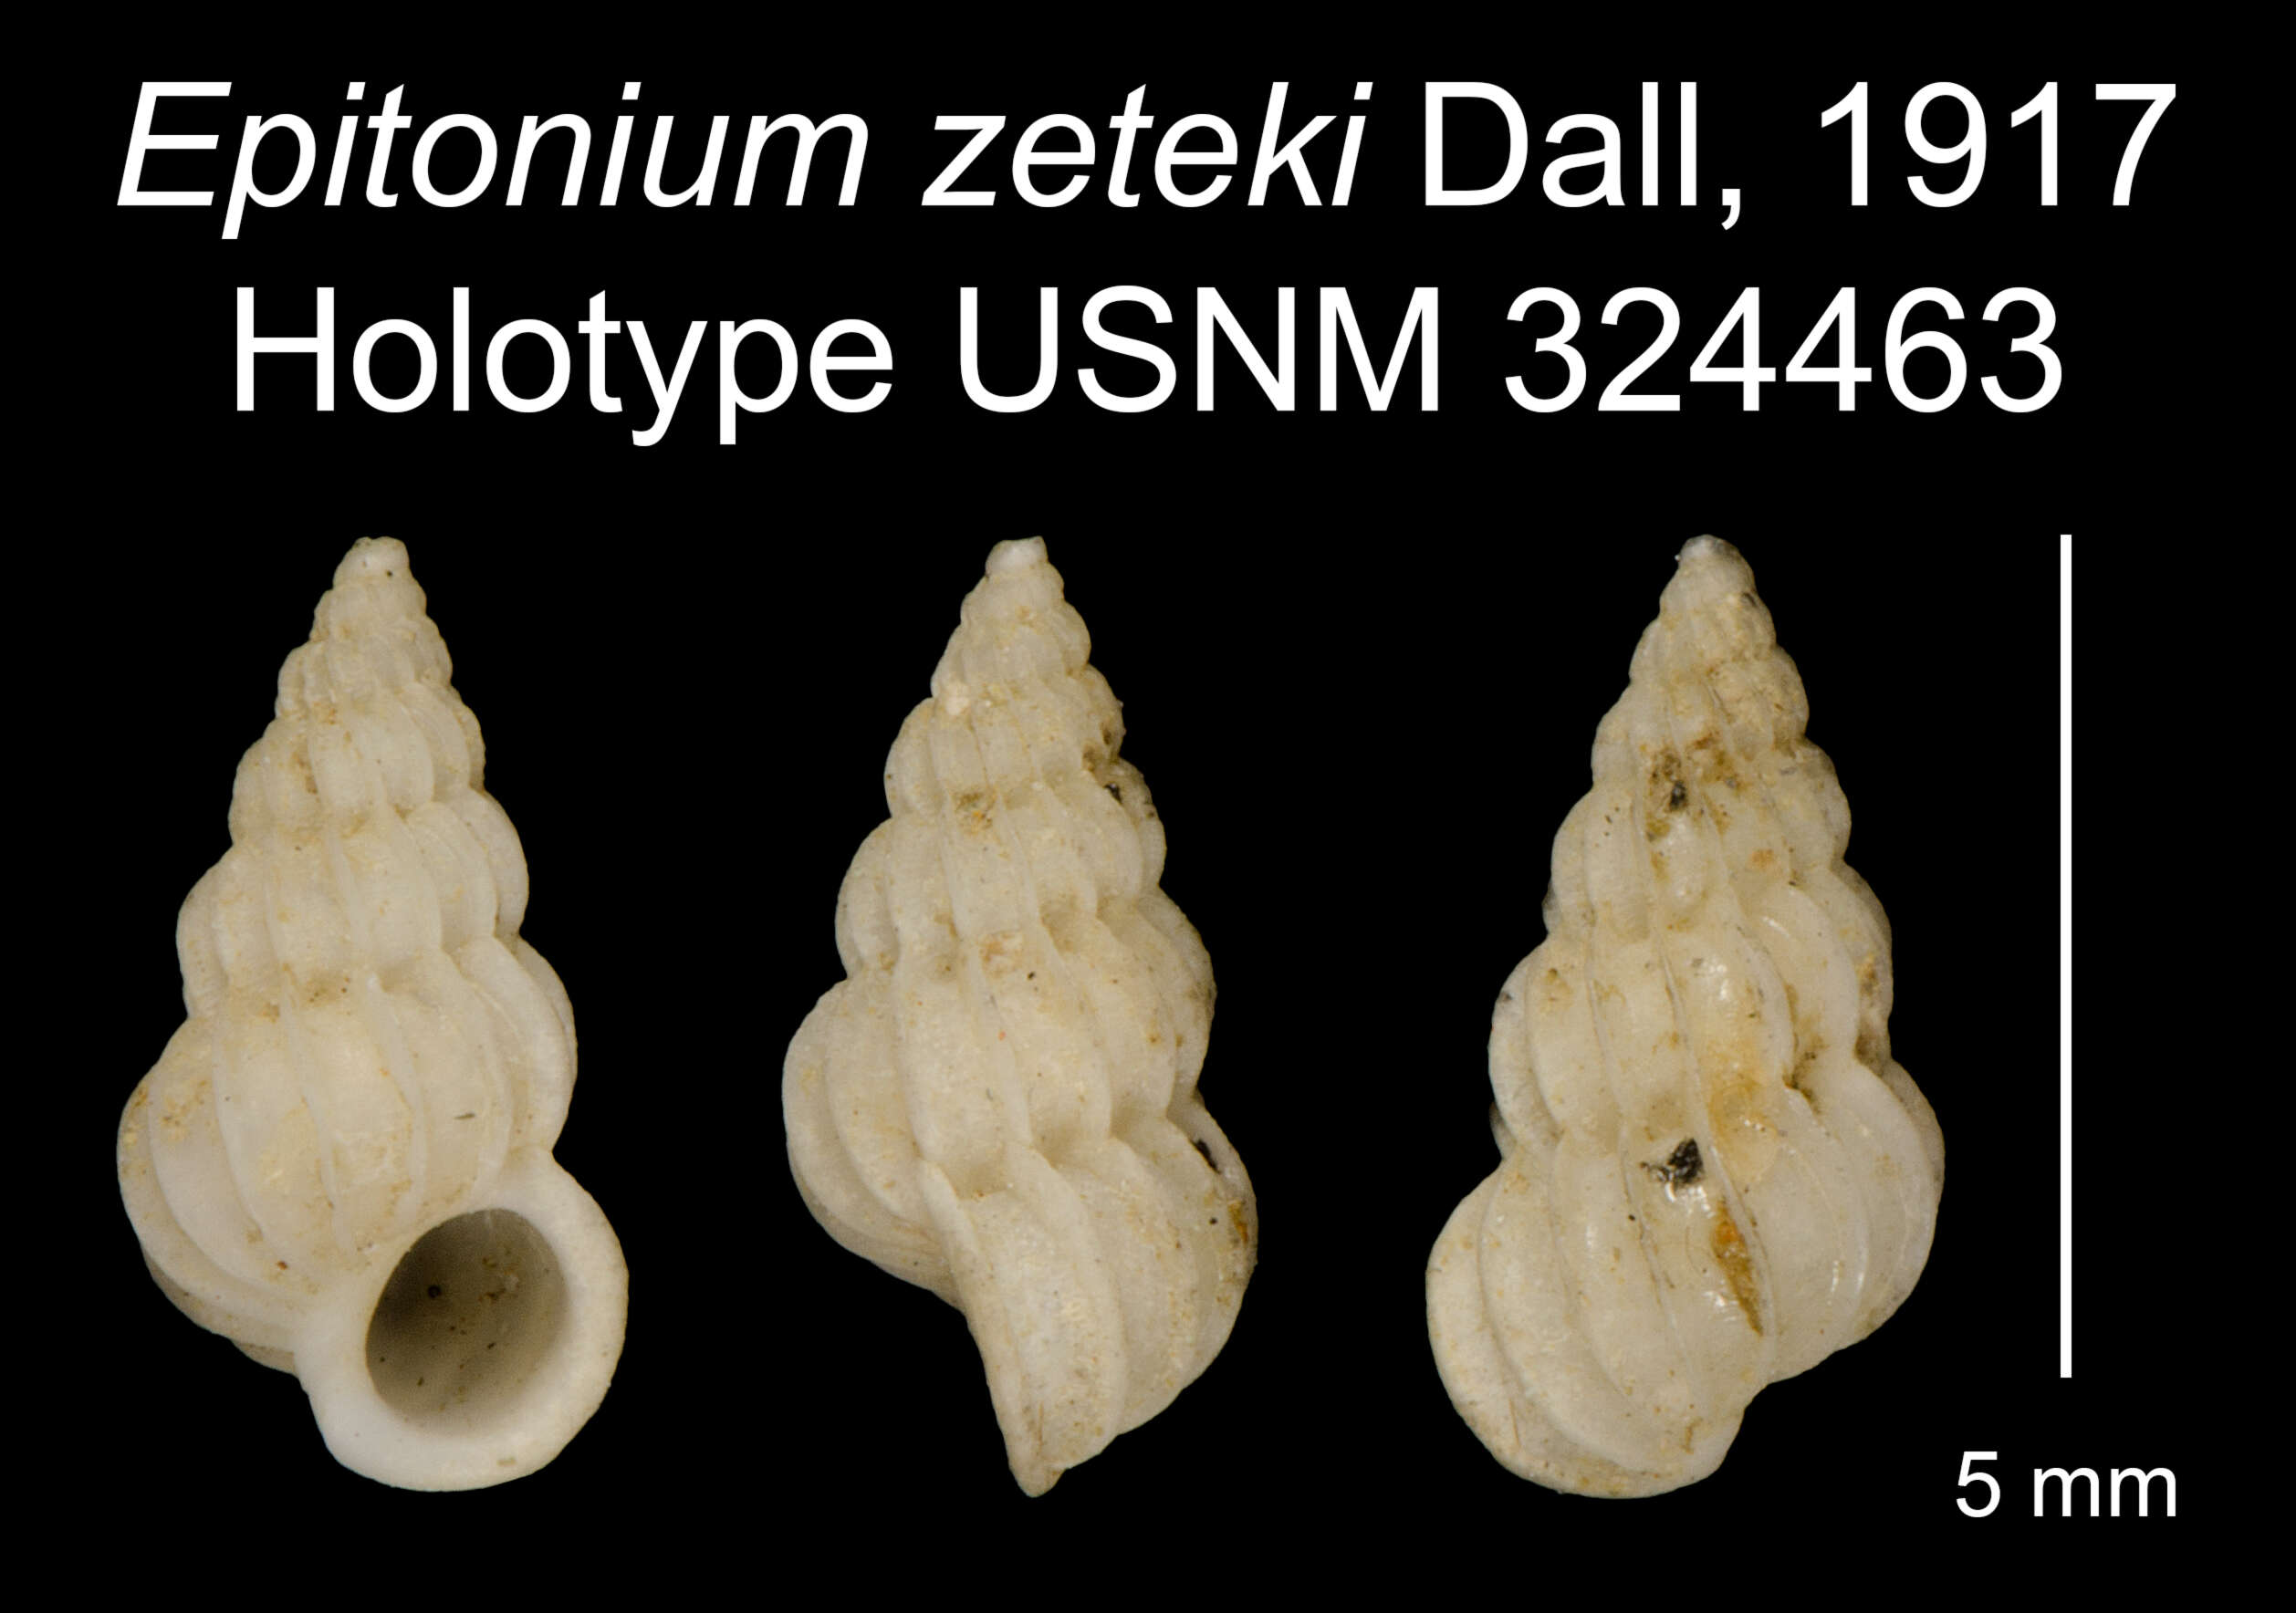 Image of Epitonium zeteki Dall 1917